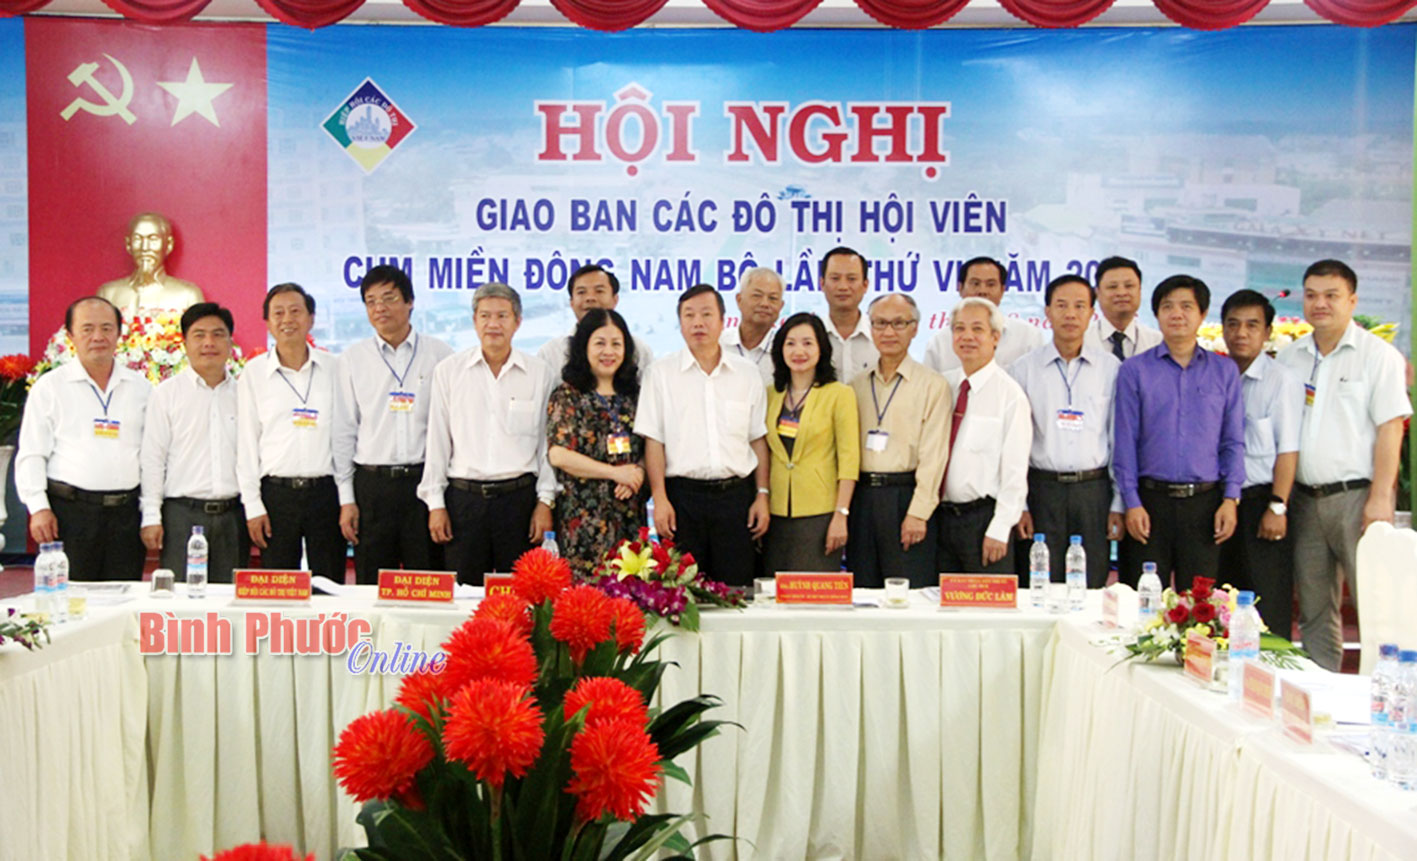 Đại diện lãnh đạo tỉnh Bình Phước, thị xã Đồng Xoài và Hiệp hội đô thị Việt Nam chụp hình lưu niệm với các đô thị hội viên cụm miền Đông Nam bộ